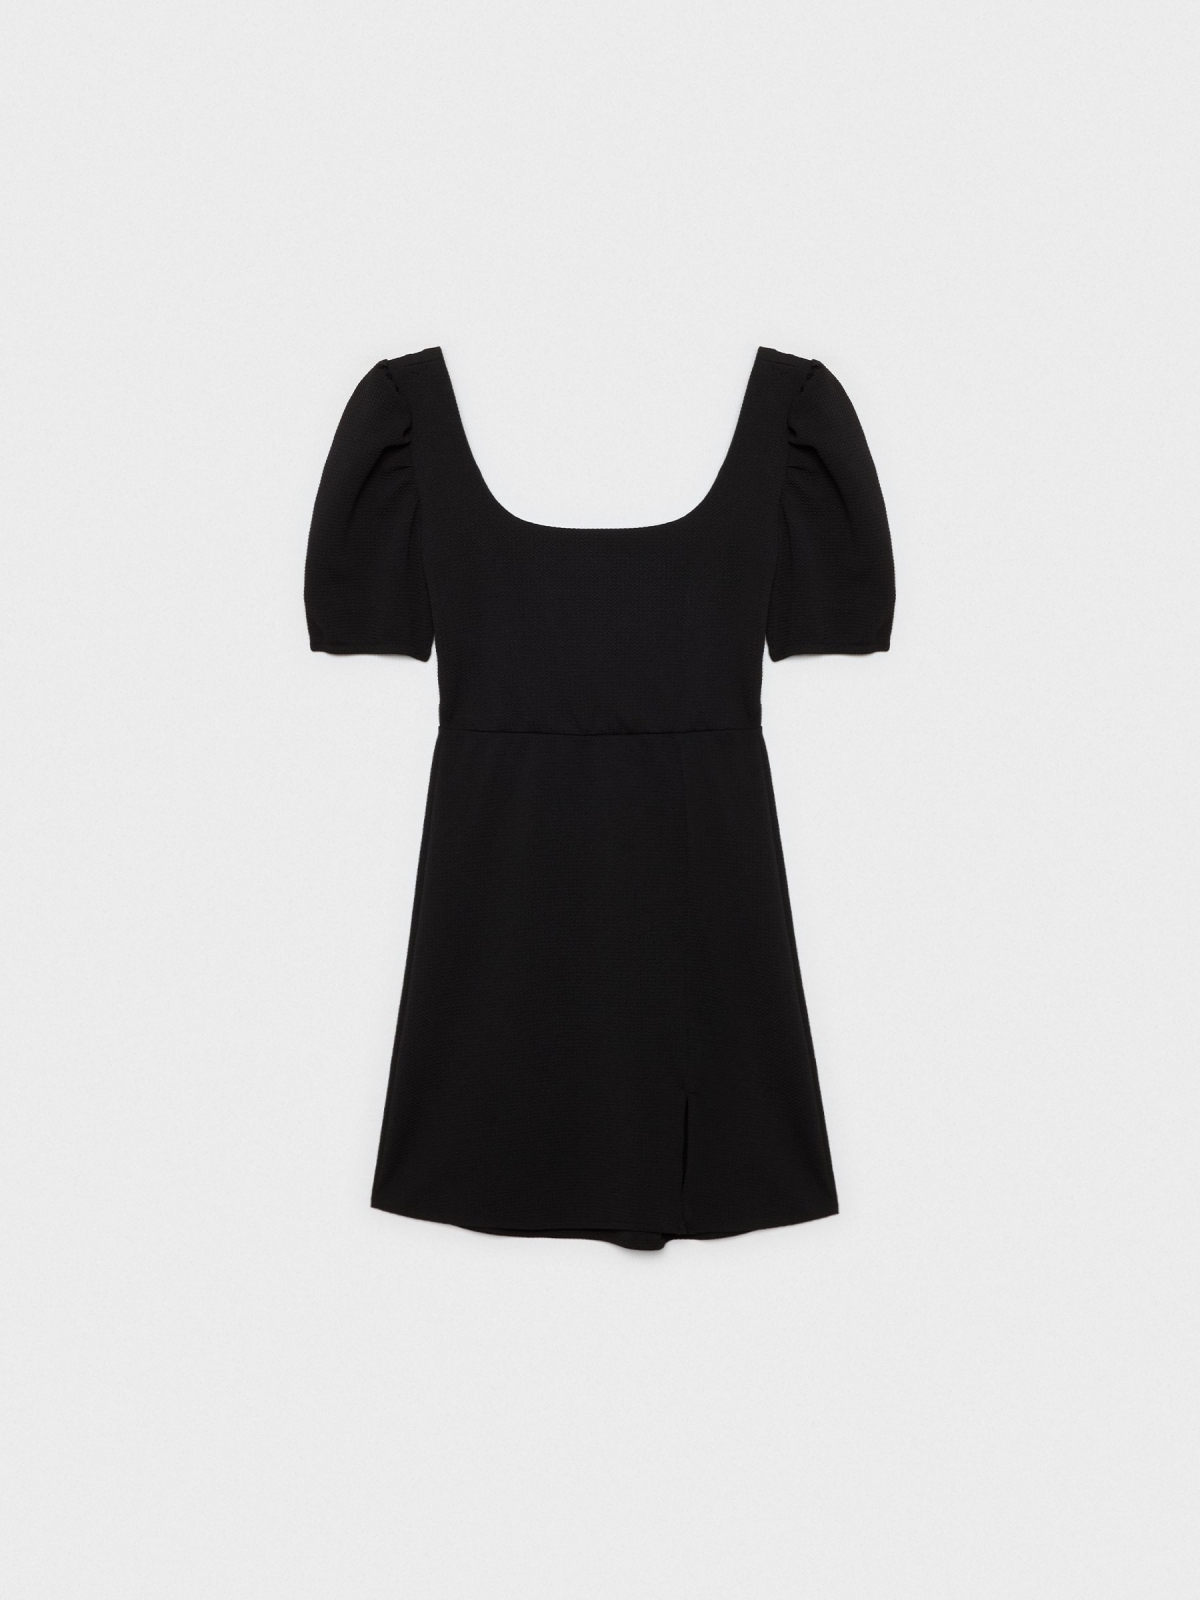  Mini-vestido texturizado preto